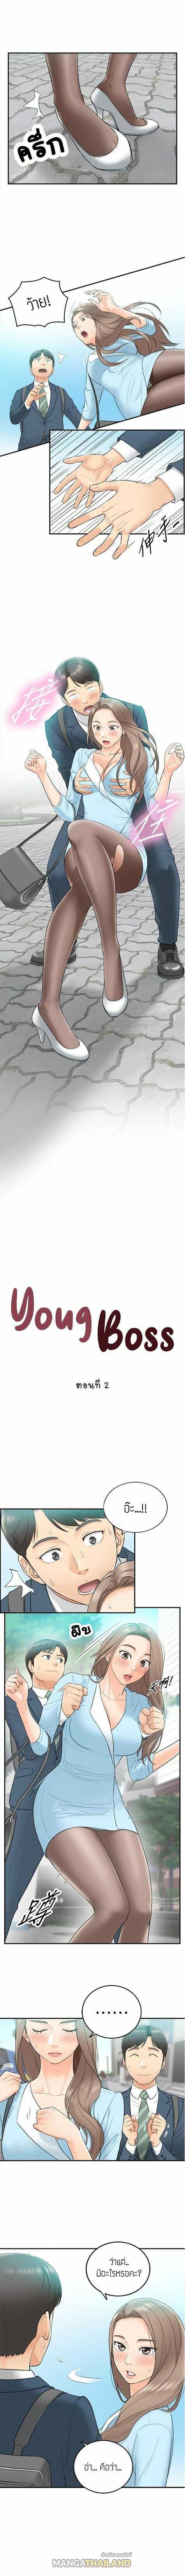 Young Boss ตอนที่ 2 แปลไทย รูปที่ 2